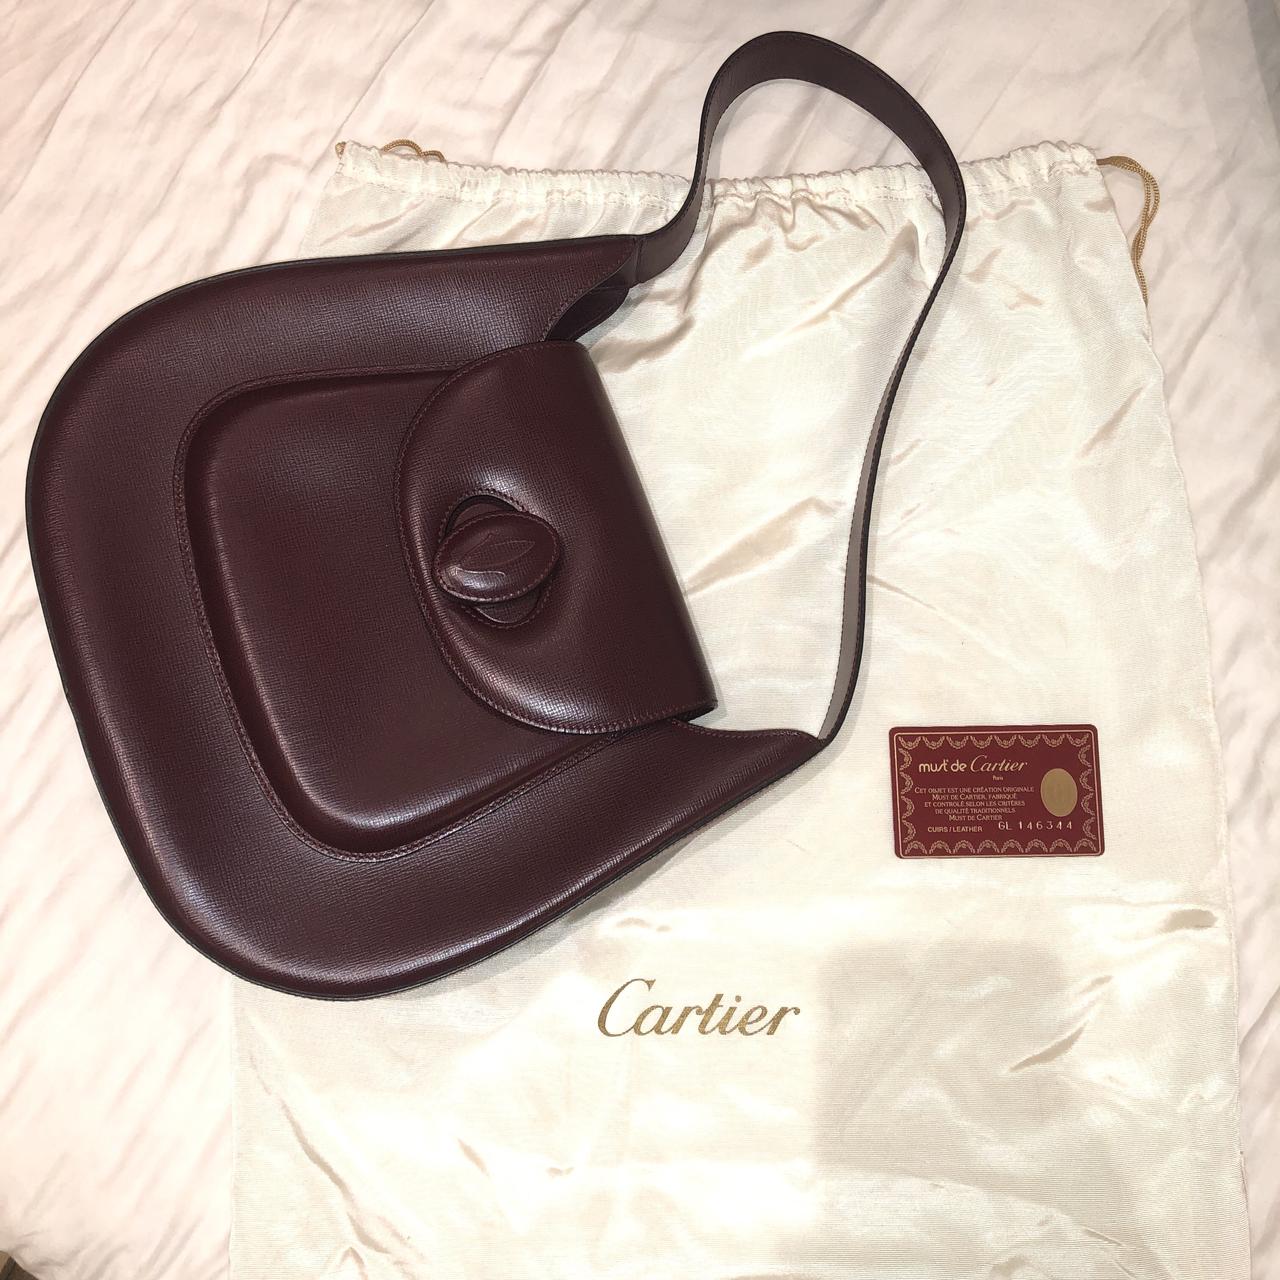 Cartier, Bags, Authentic Cartier Bag